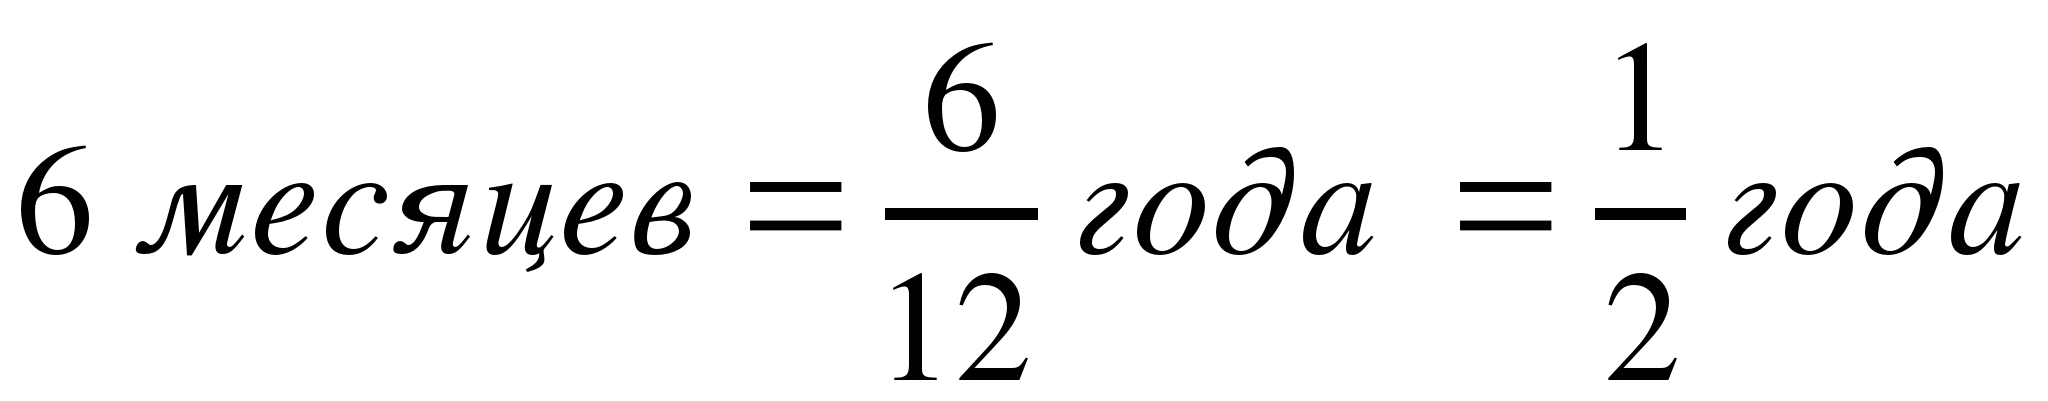 Конспект урока по математике на тему Равенство дробей 2 (5 класс)